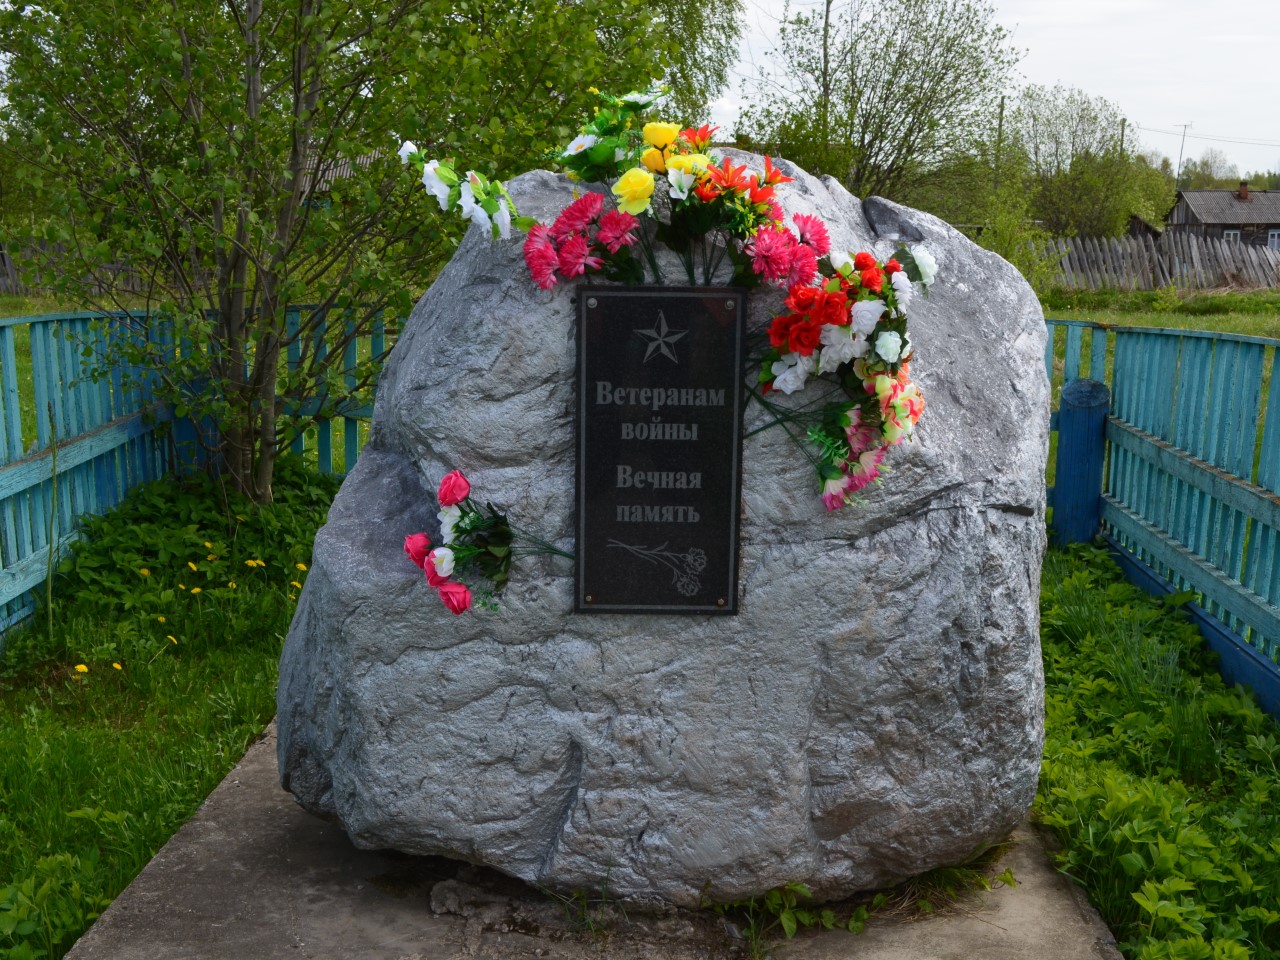 Памятник "Ветеранам войны" 2